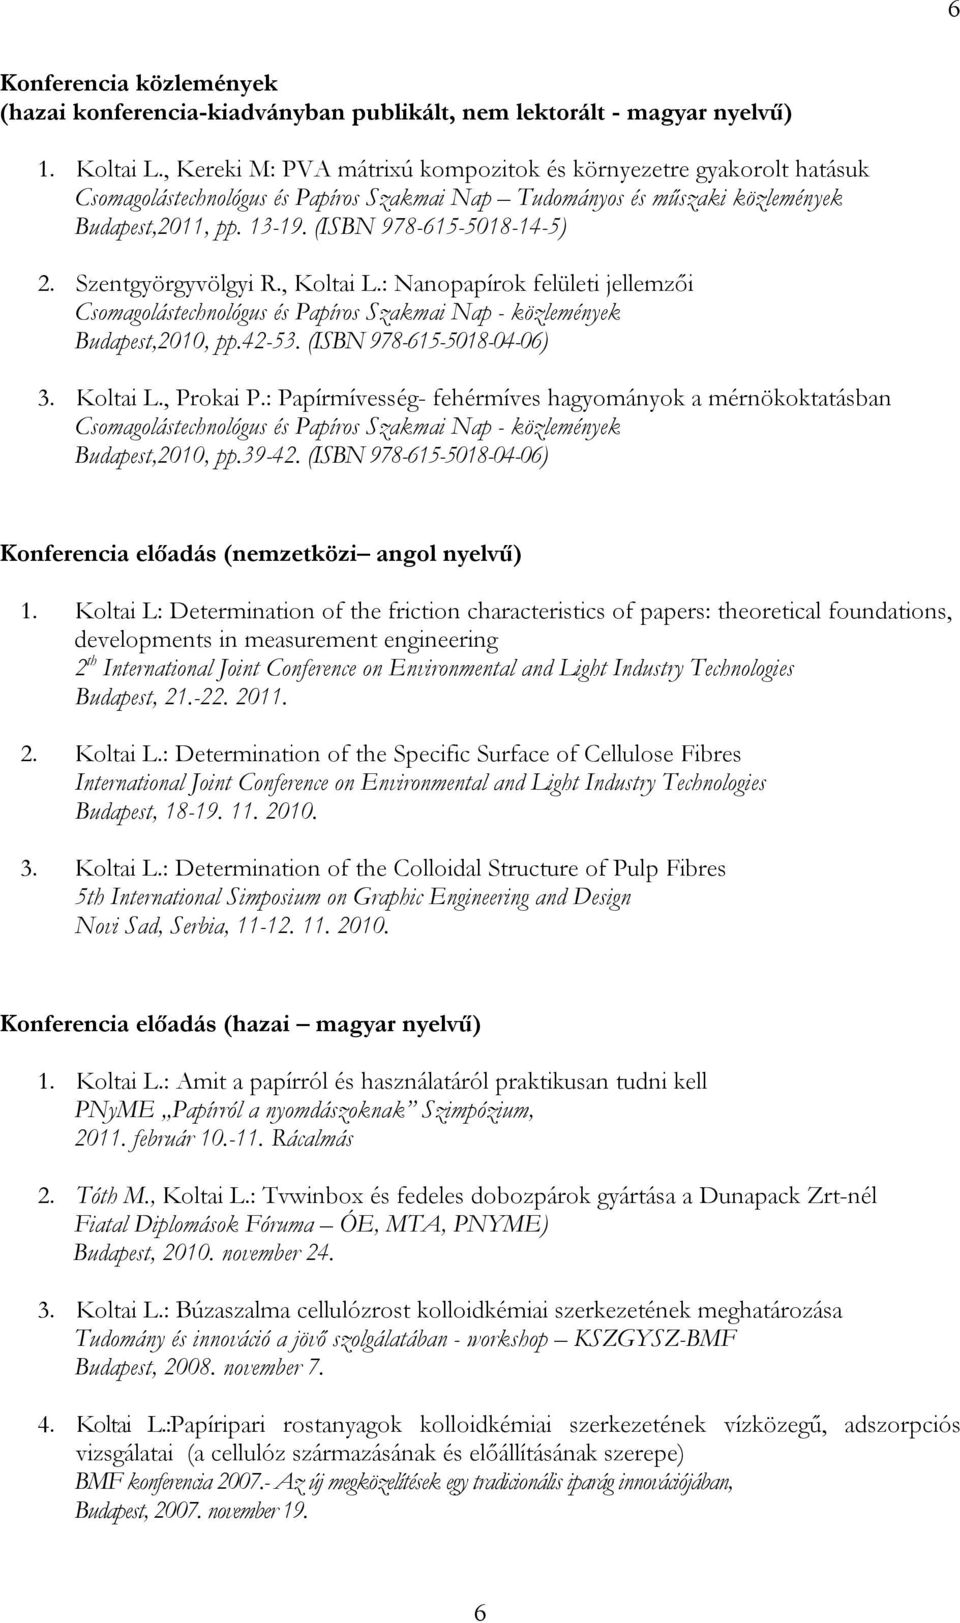 Szentgyörgyvölgyi R., Koltai L.: Nanopapírok felületi jellemzői Csomagolástechnológus és Papíros Szakmai Nap - közlemények Budapest,2010, pp.42-53. (ISBN 978-615-5018-04-06) 3. Koltai L., Prokai P.